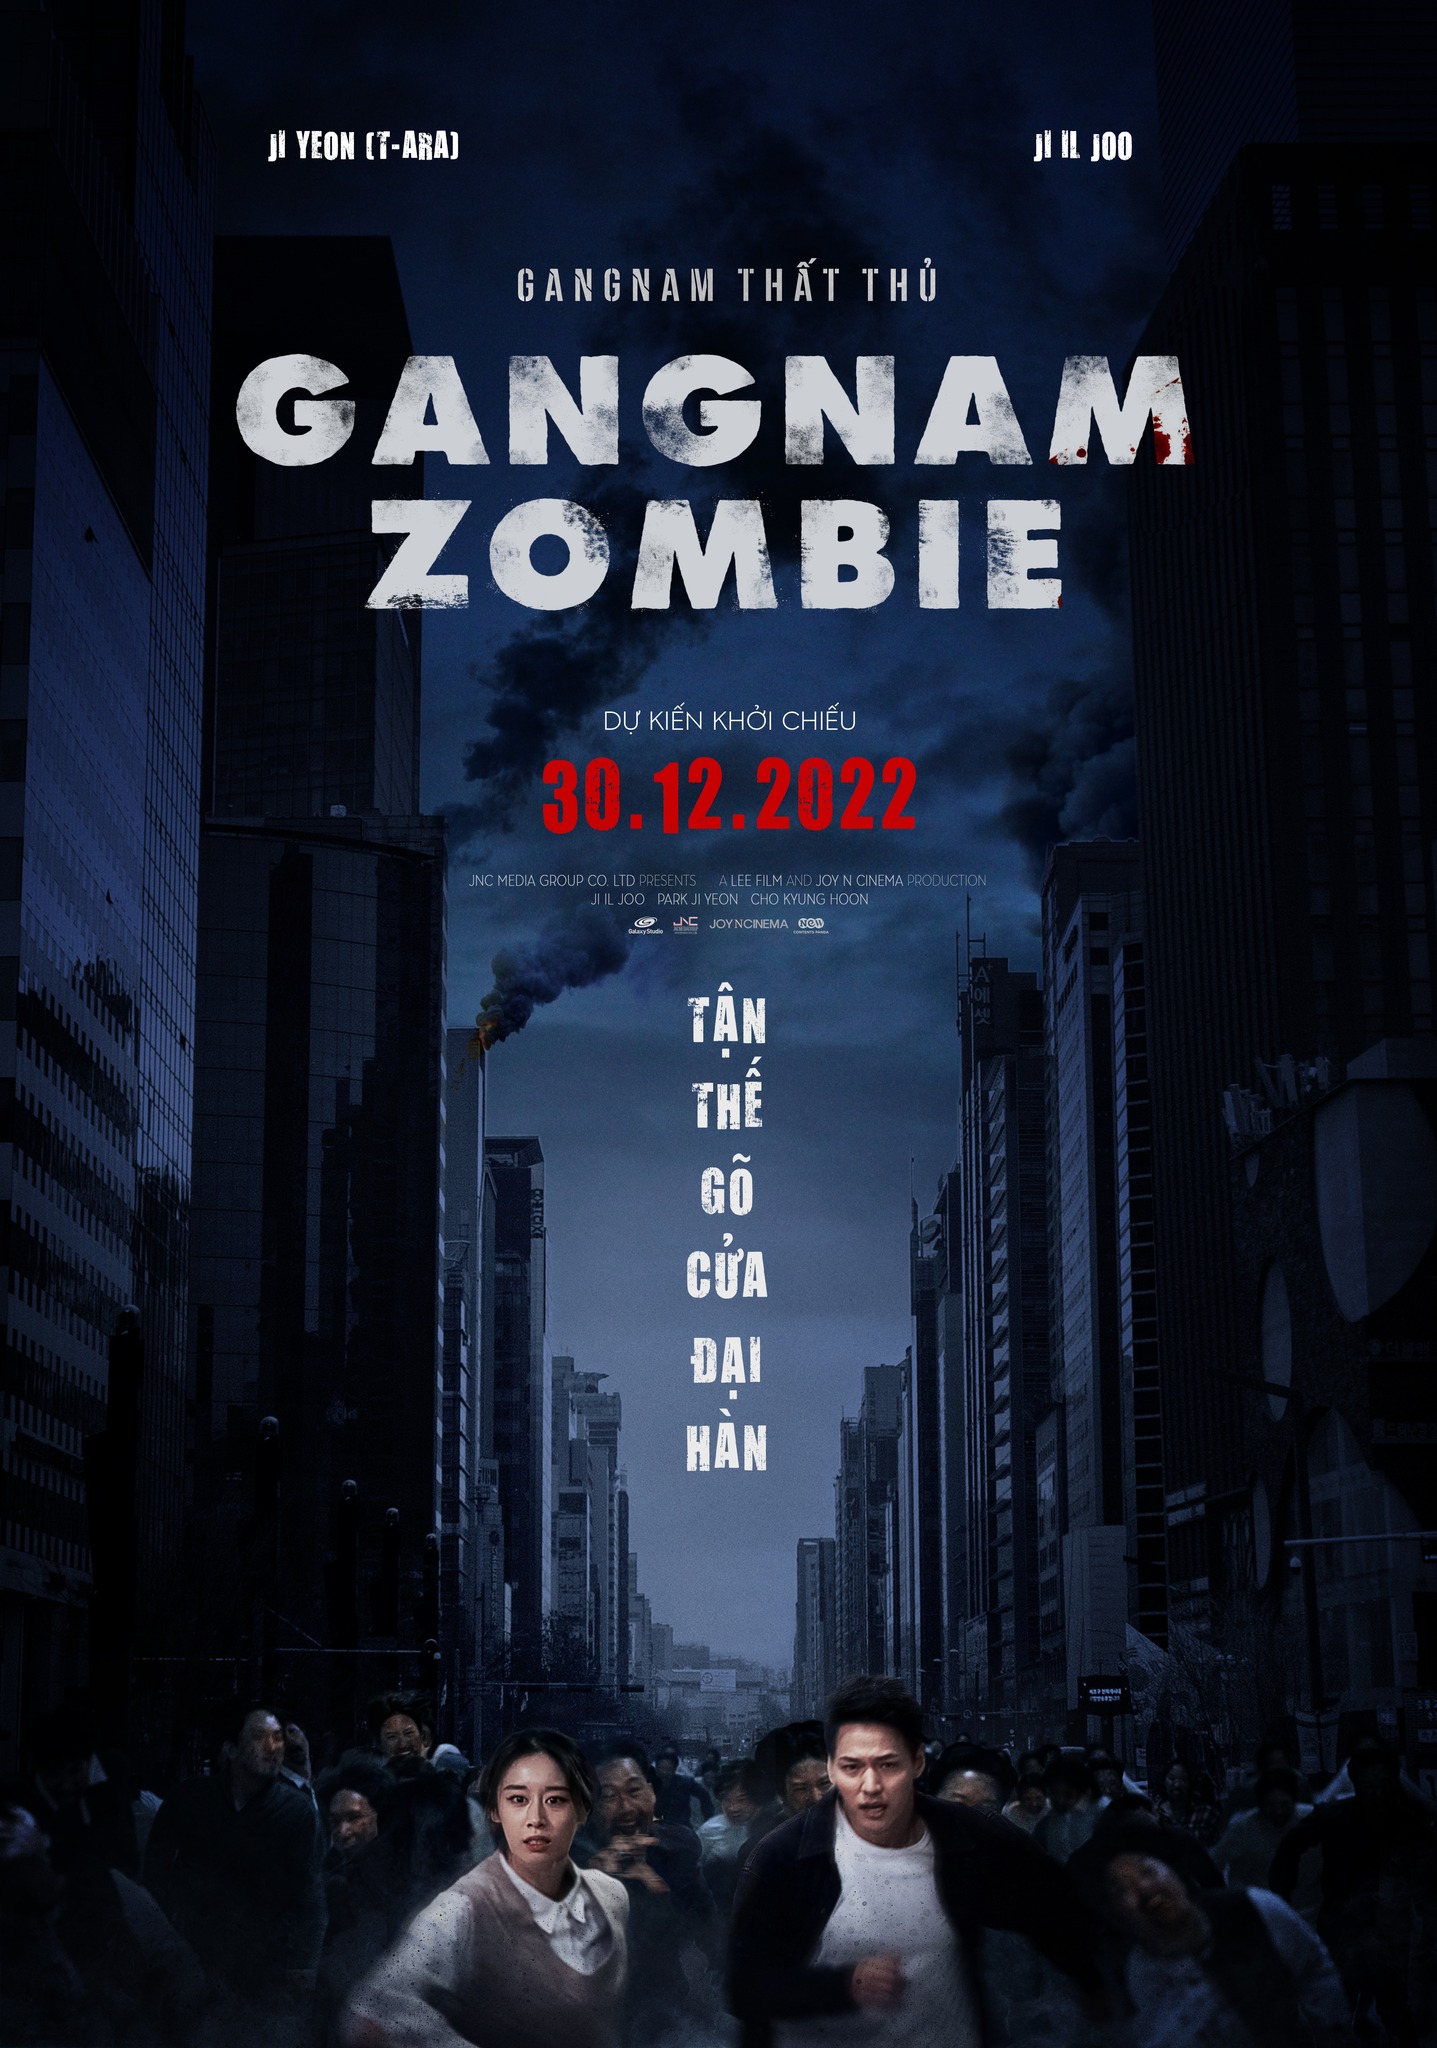 Gangnam Zombie là bộ phim zombie kể về cuộc đấu tranh của những người dân liều mạng để sinh tồn ở Gangnam